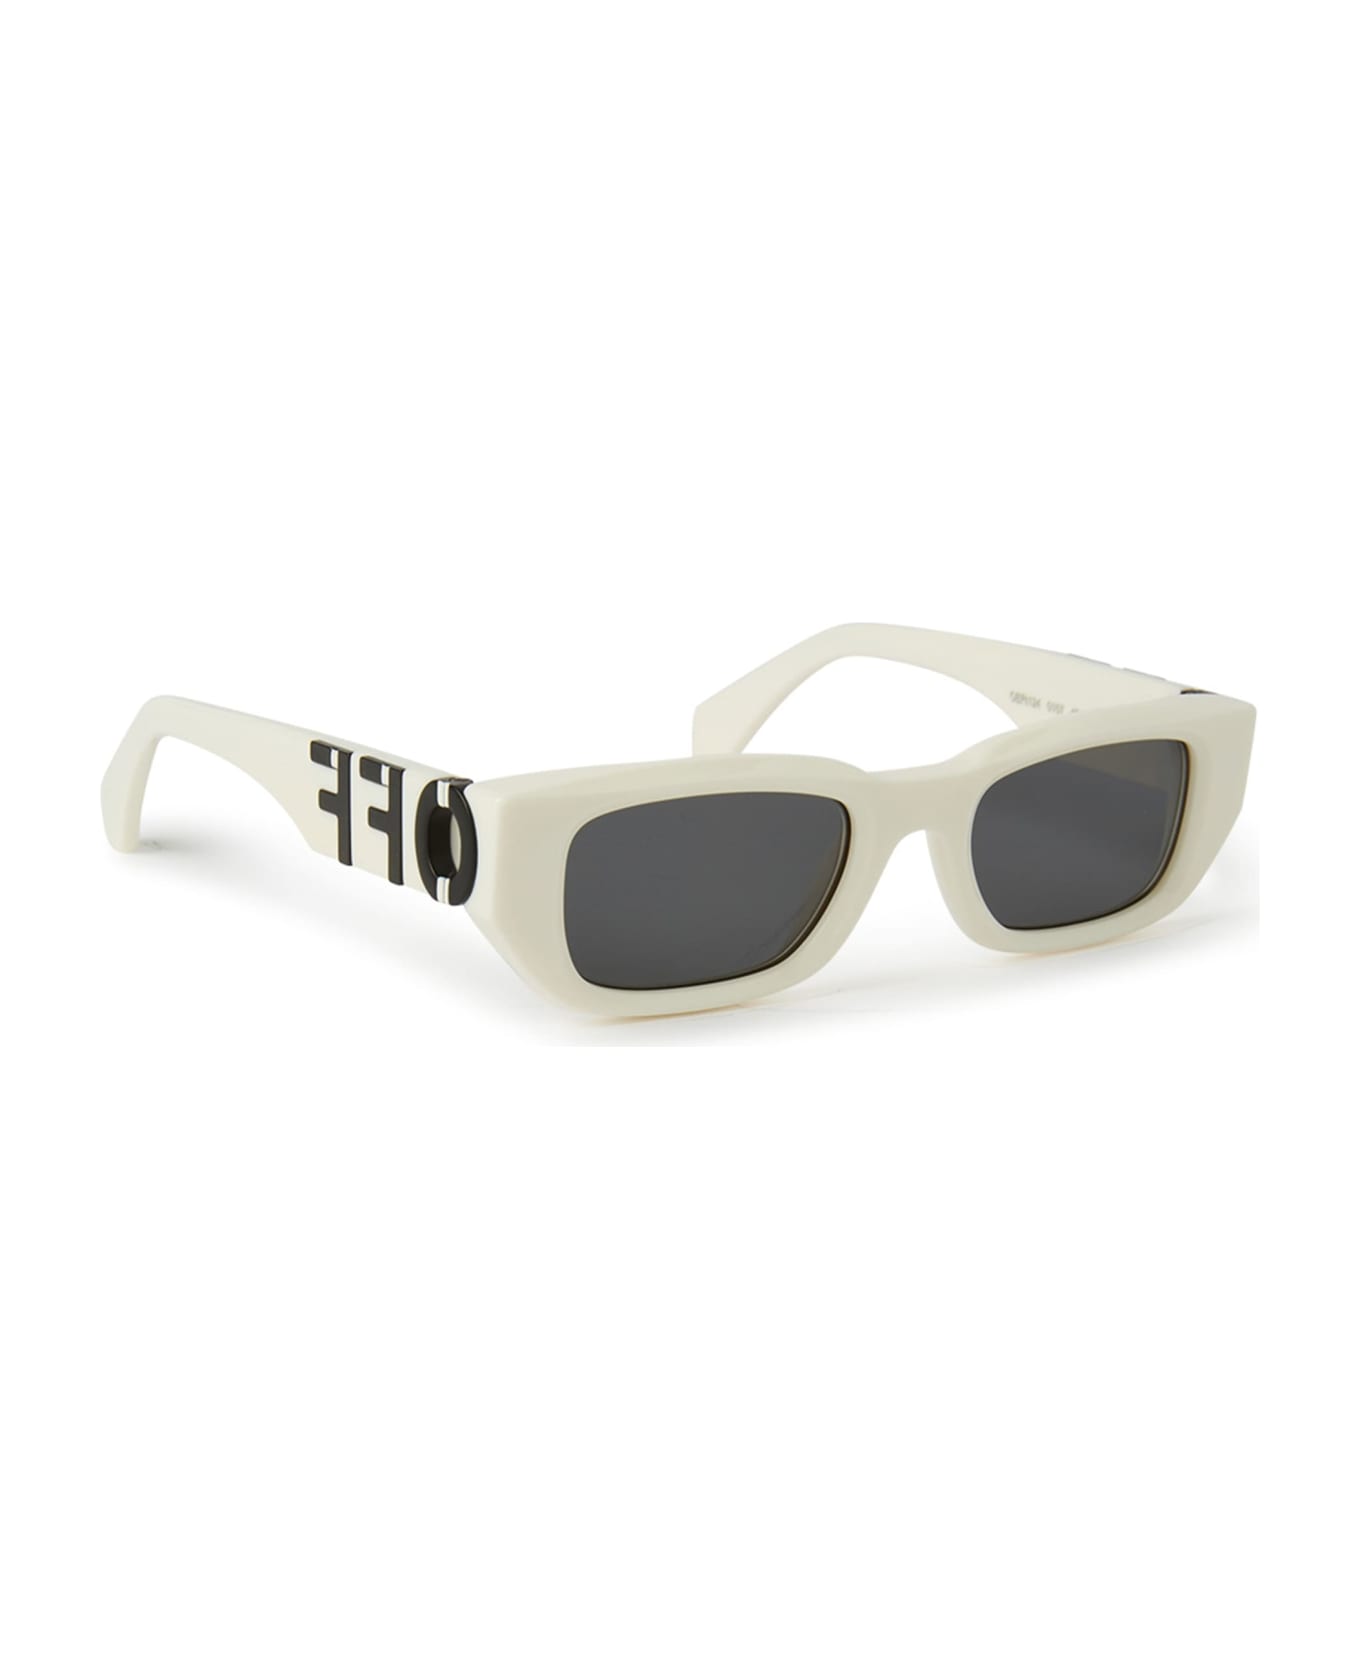 Off-White Fillmore - White / Dark Grey Sunglasses - White